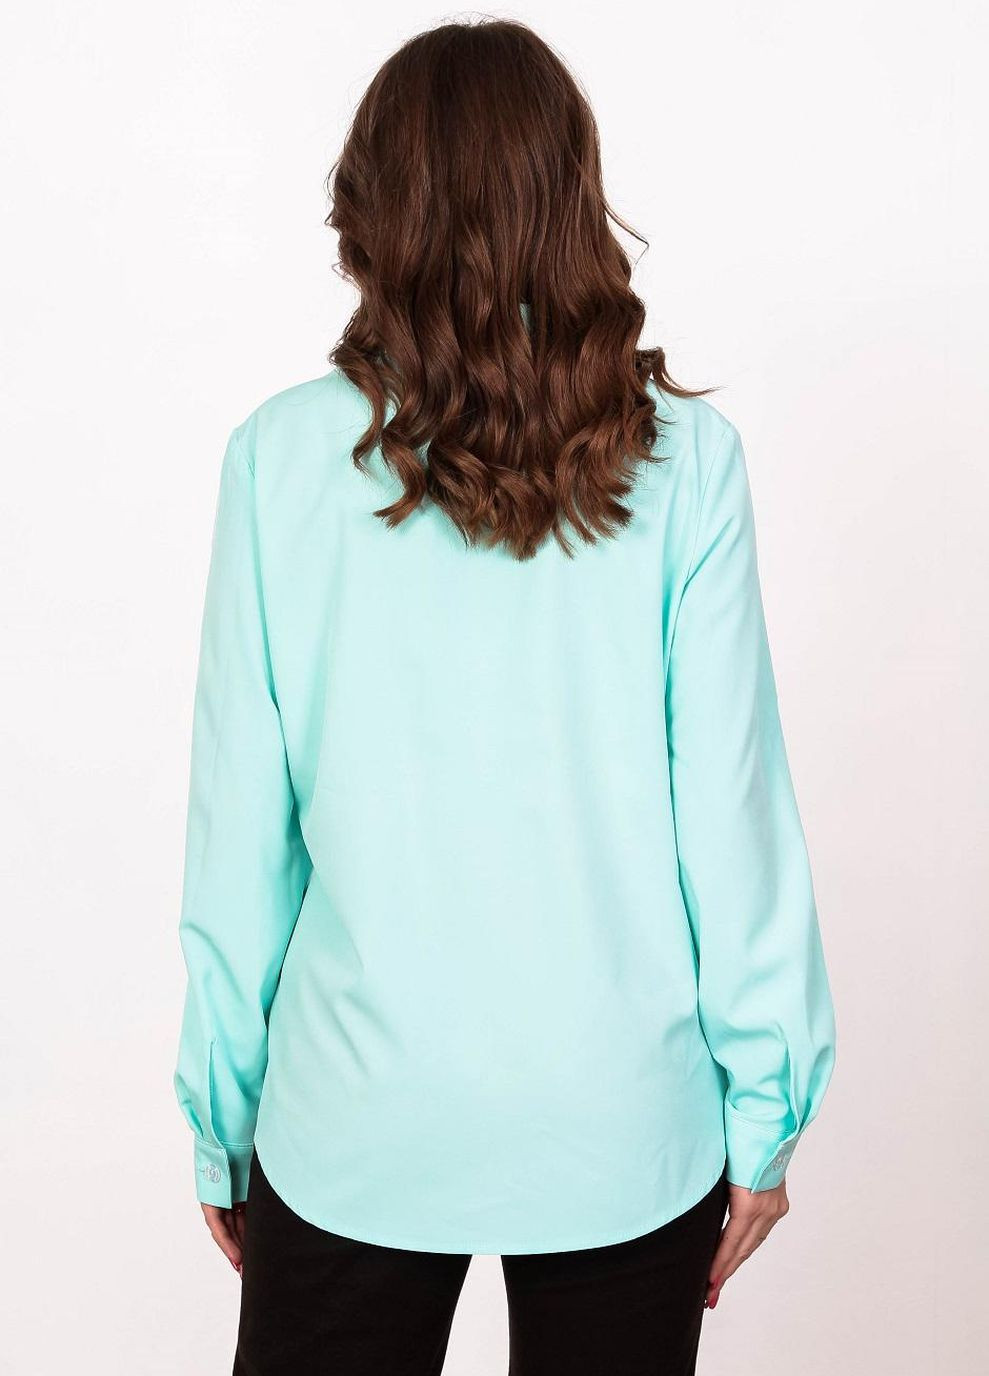 Бирюзовая демисезонная блузка - рубашка женская 051 однотонный софт бирюзовая Актуаль